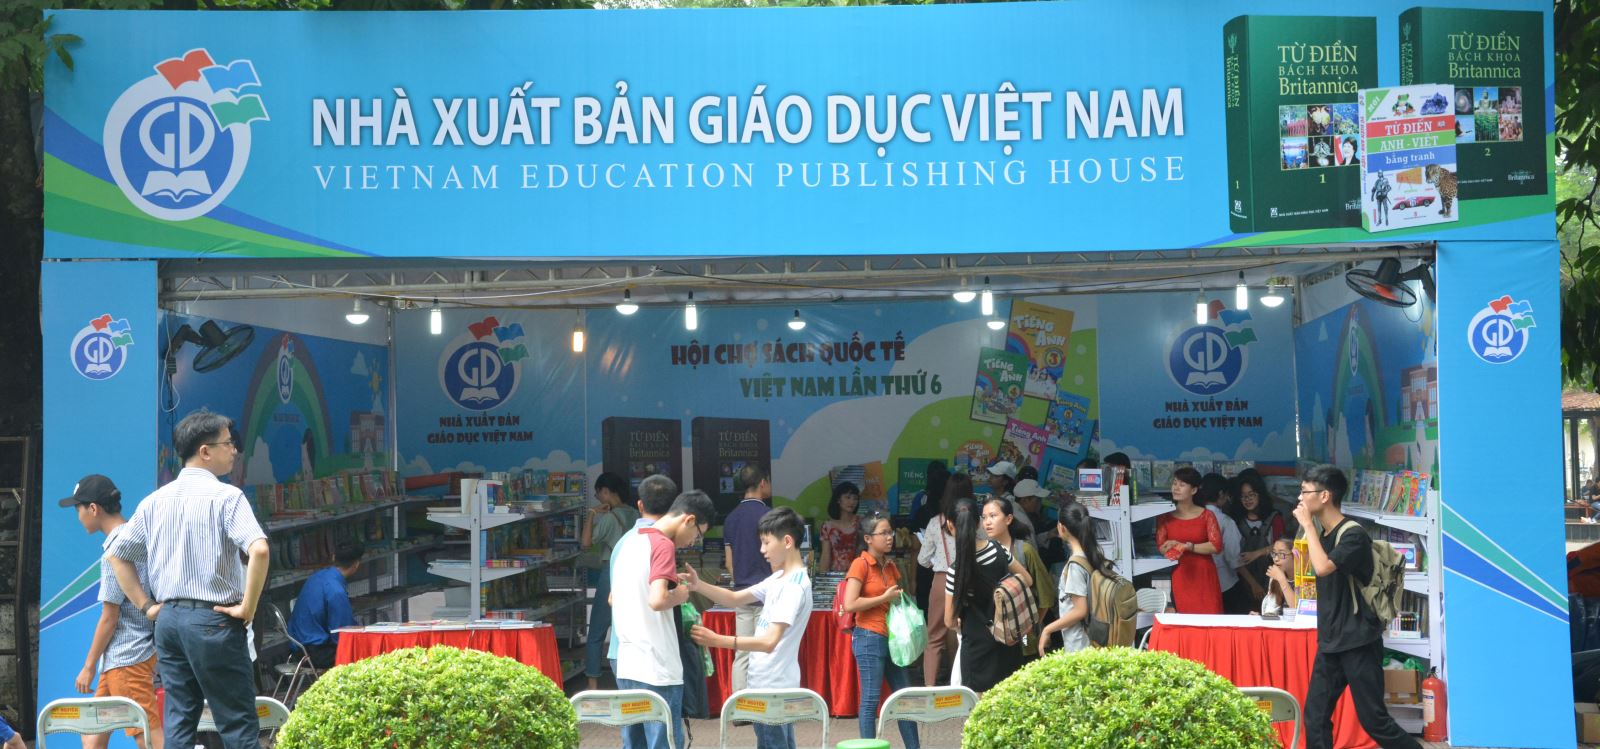 Nhà xuất bản Giáo dục Việt Nam tham gia Triển lãm – Hội chợ Sách quốc tế lần thứ VI năm 2017